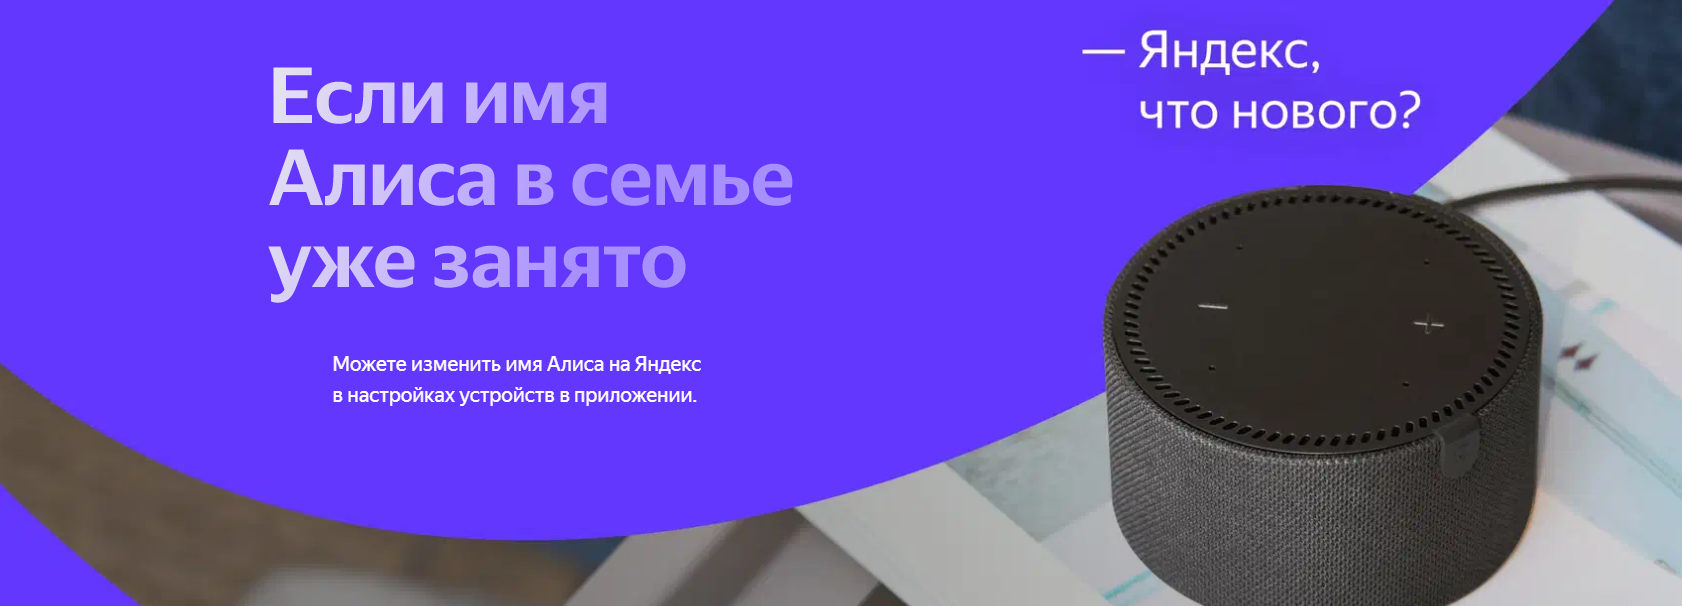 Яндекс.Станция Мини Плюс Серая YNDX-00020 с часами (Умная колонка с голосовым помощником)